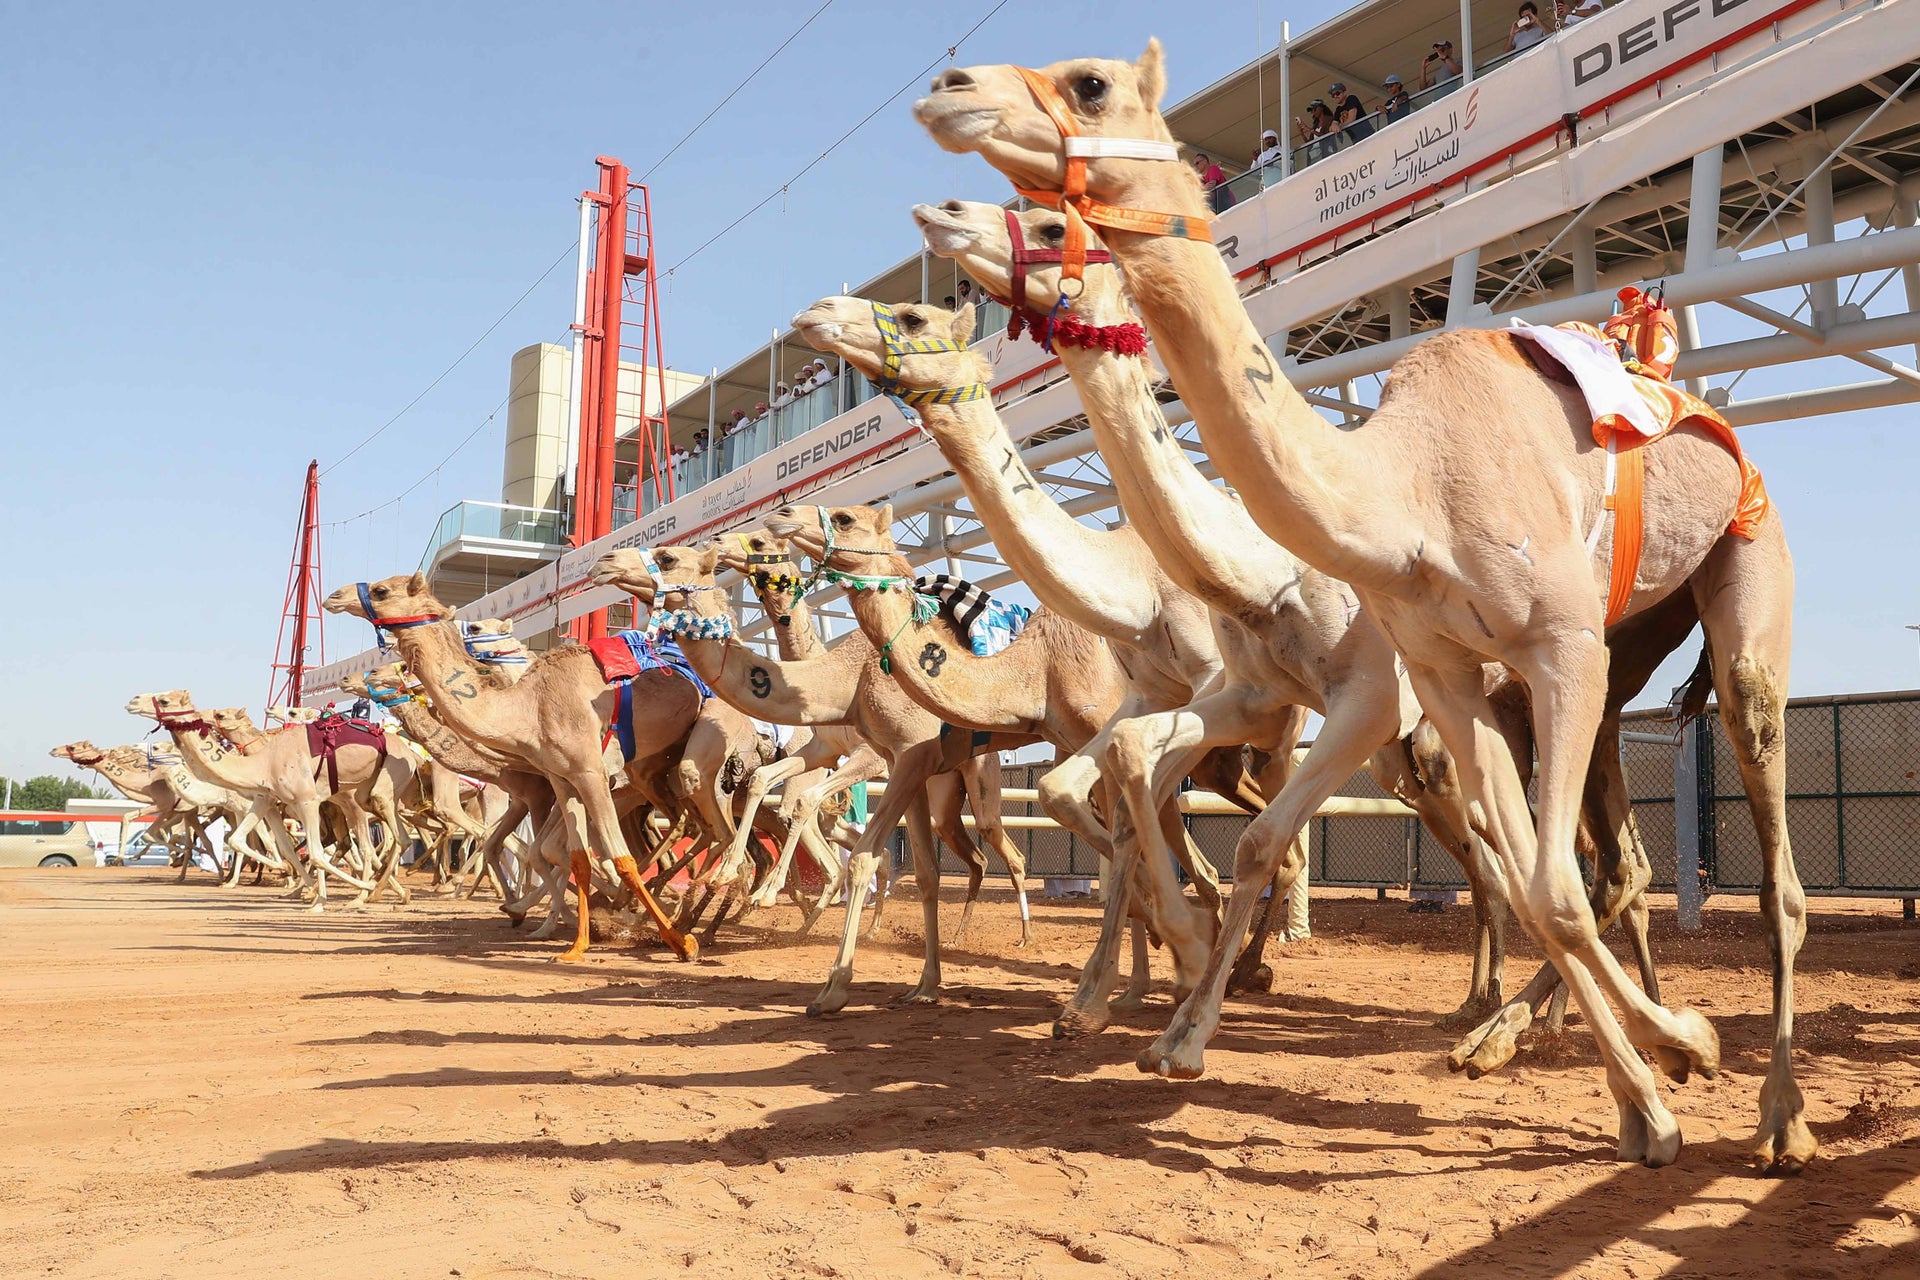 Dubai Royal Camel Racing Club Tour - Book Online at 